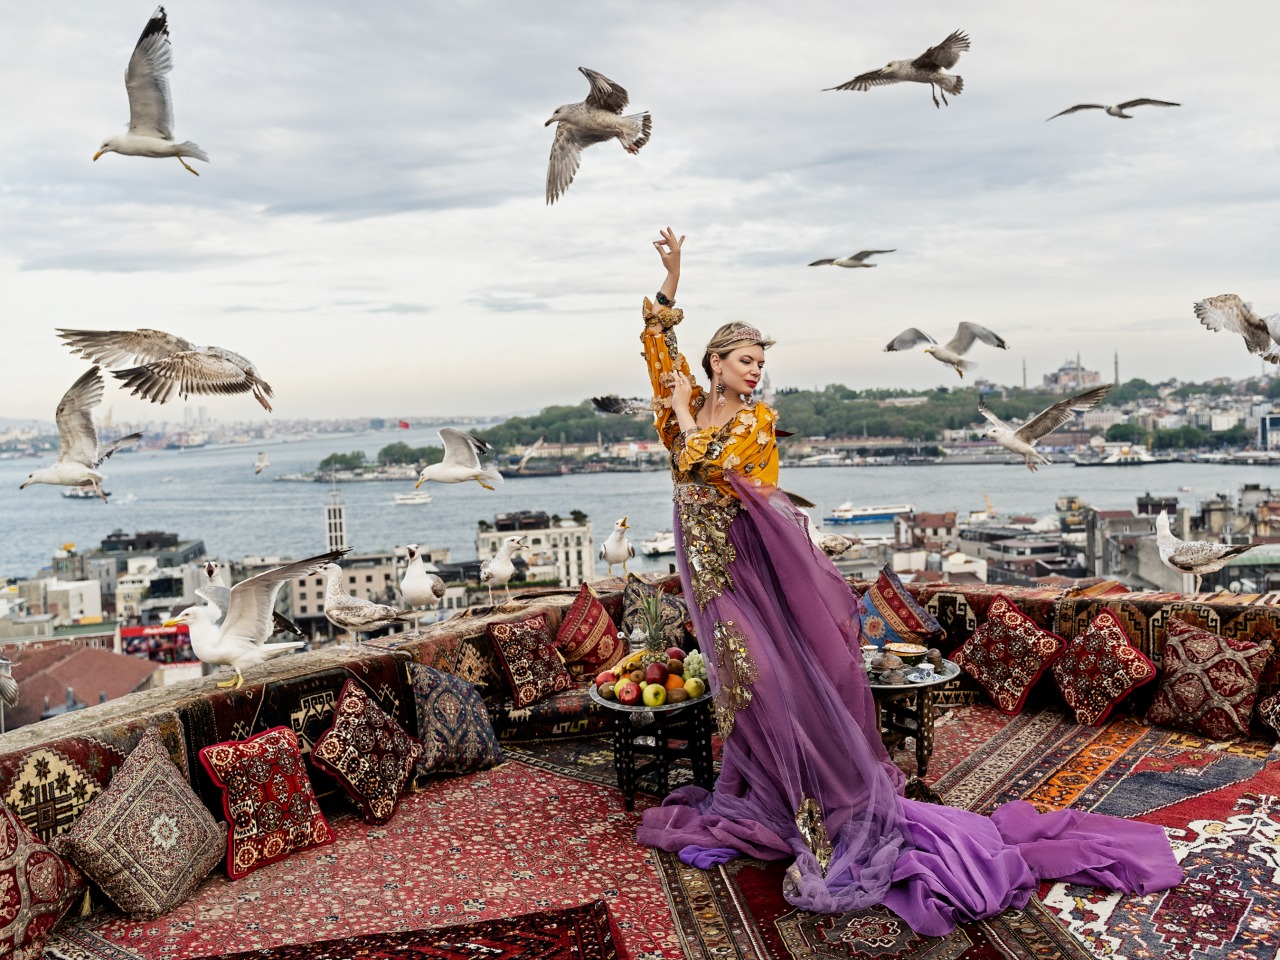 Фотосессия мечты на стамбульской крыше с чайками | Цена 160€, отзывы, описание экскурсии